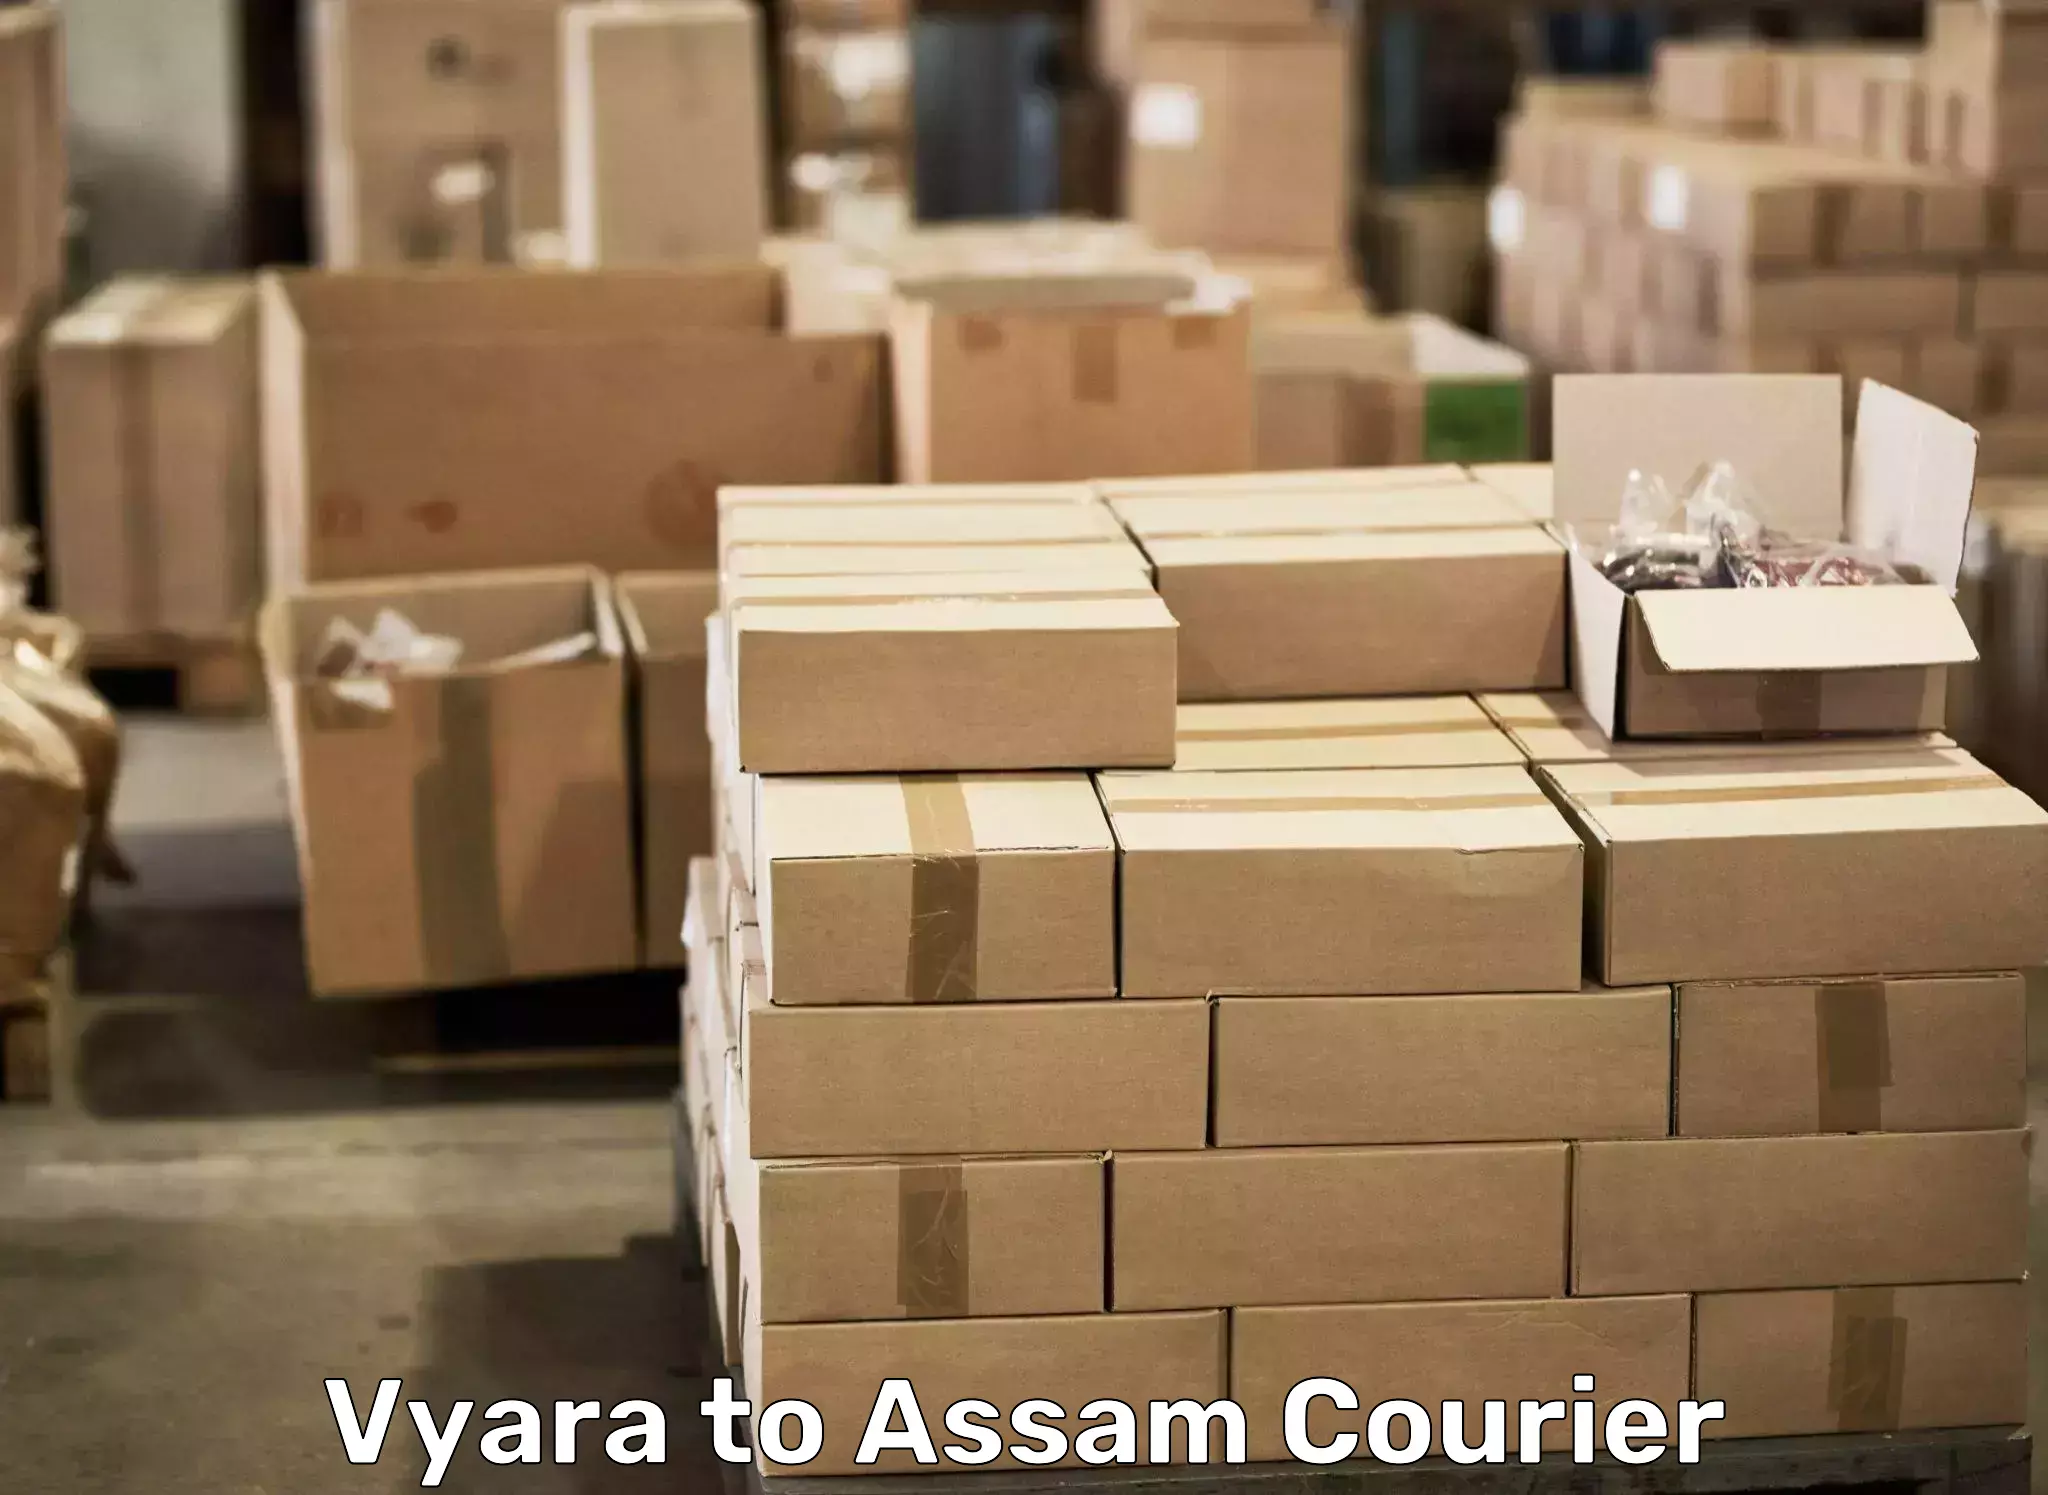 Efficient packing and moving Vyara to Thelamara